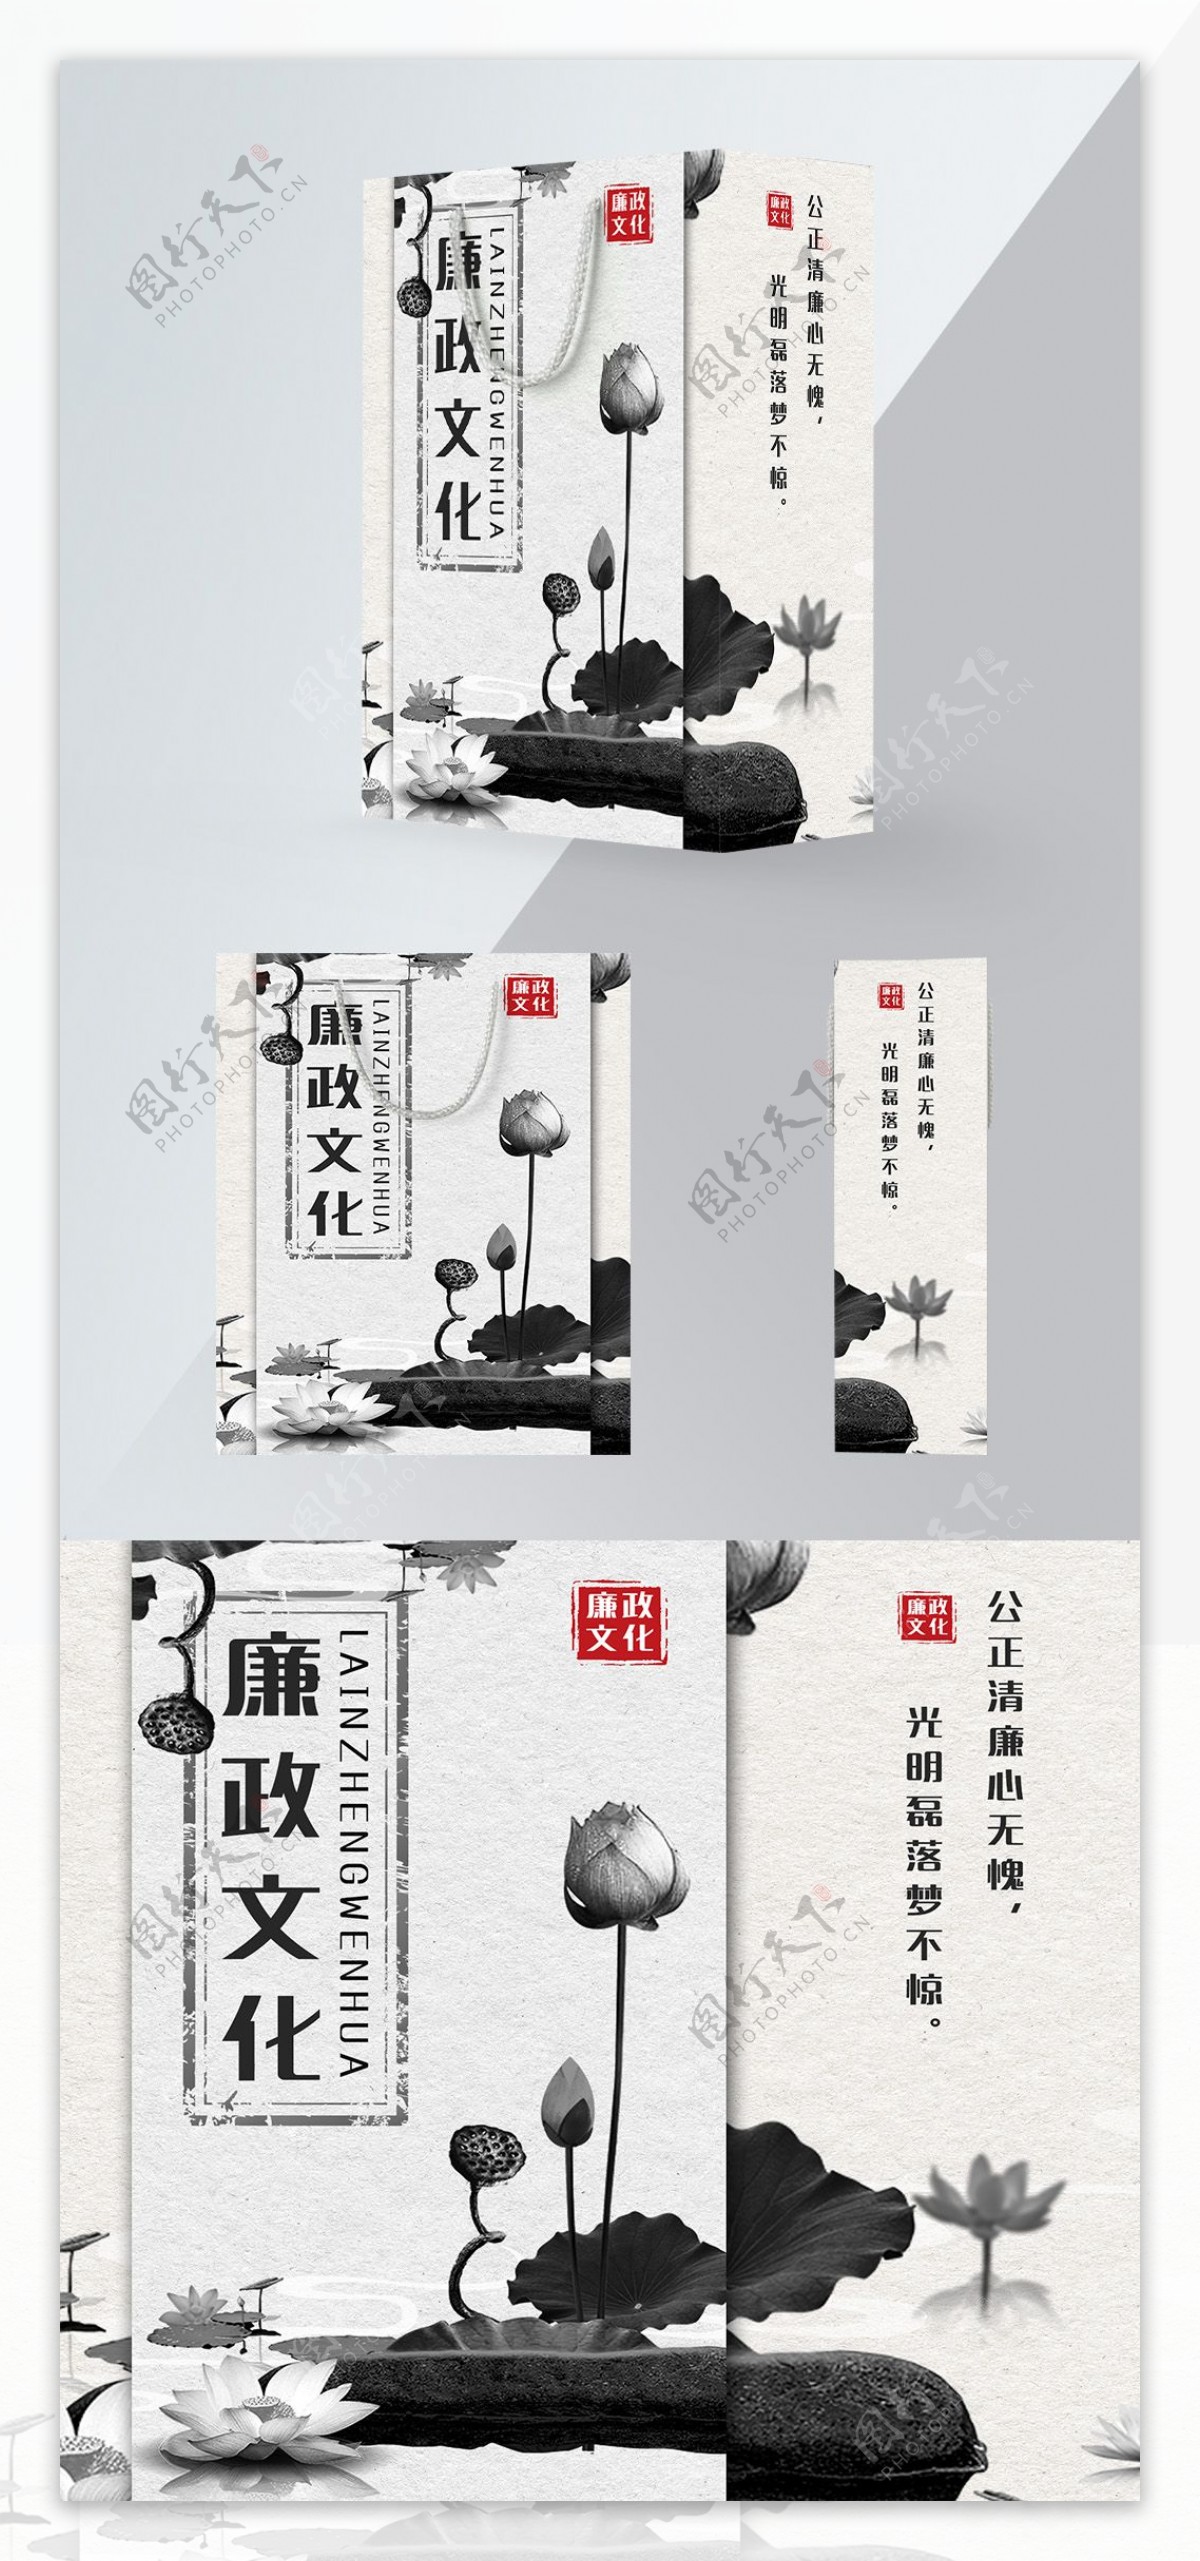 精品手提袋灰色中国风廉政文化宣传包装